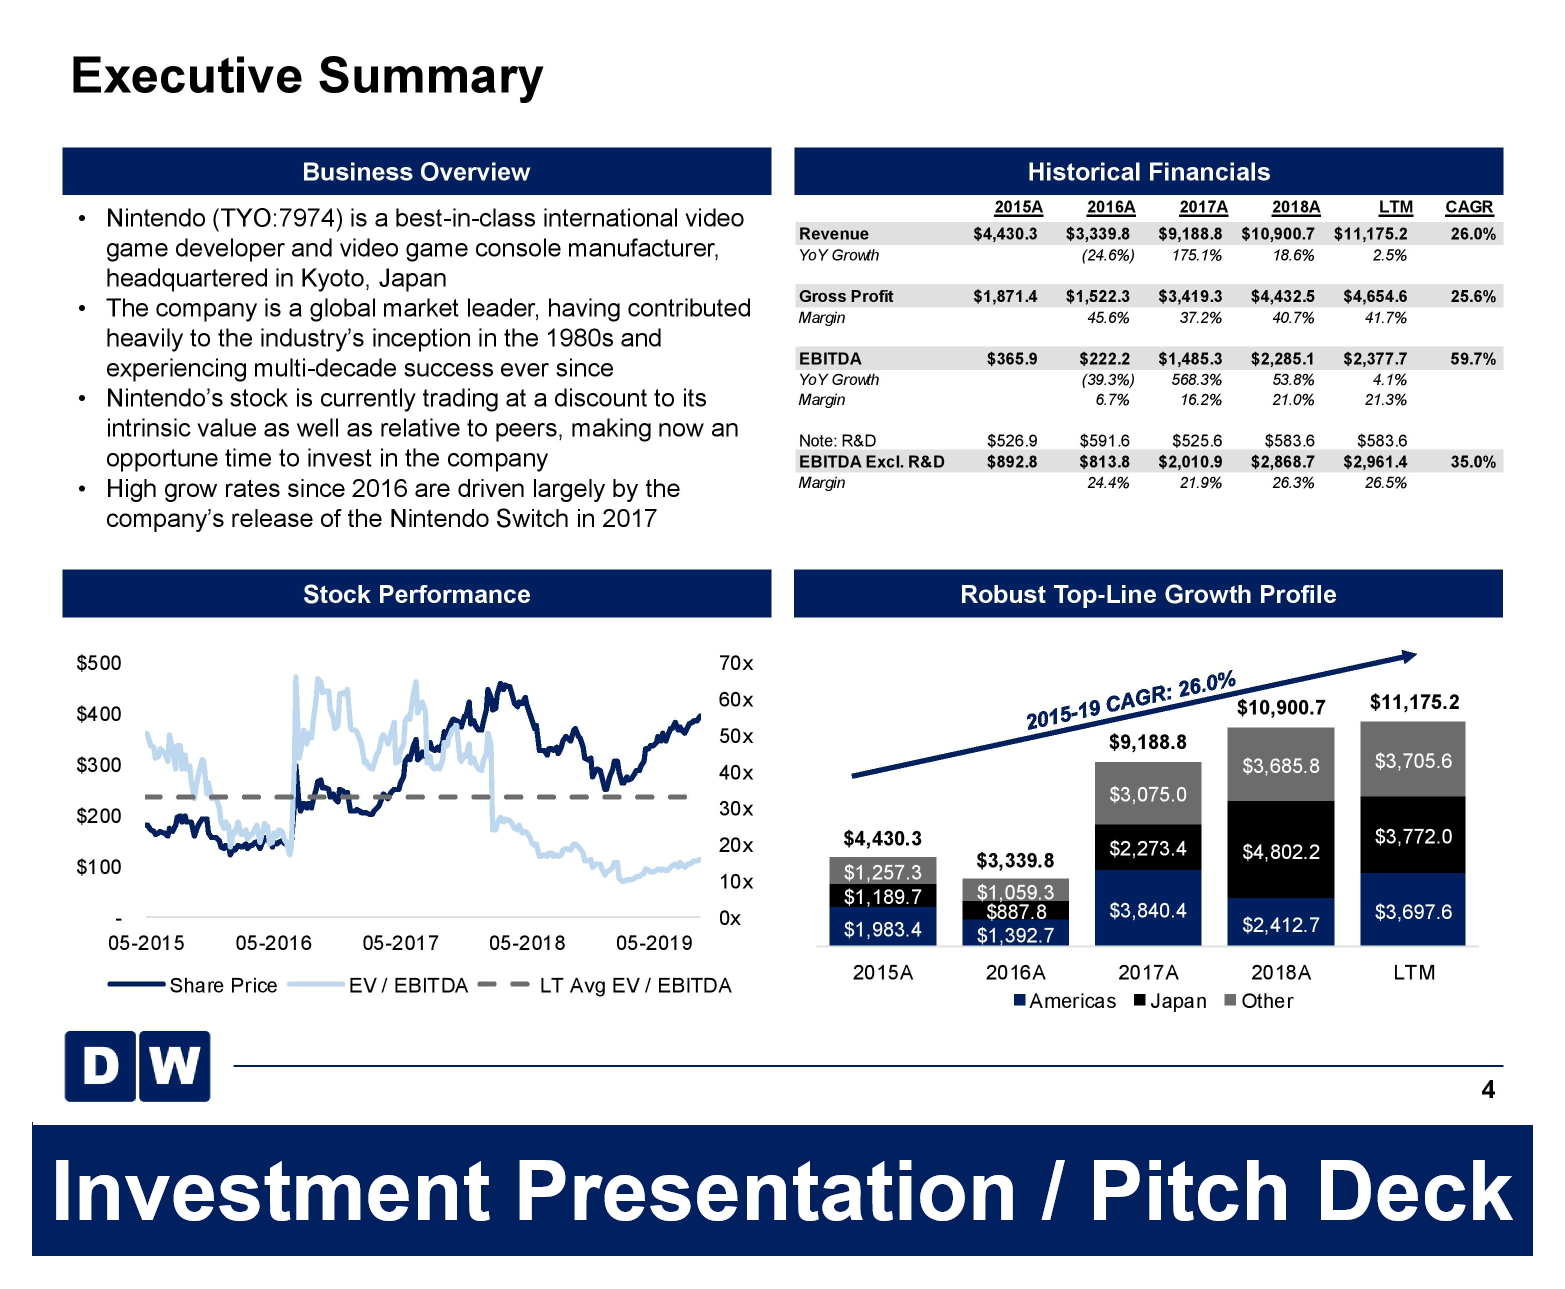 Pitch Deck Investment Presentation Template Eloquens